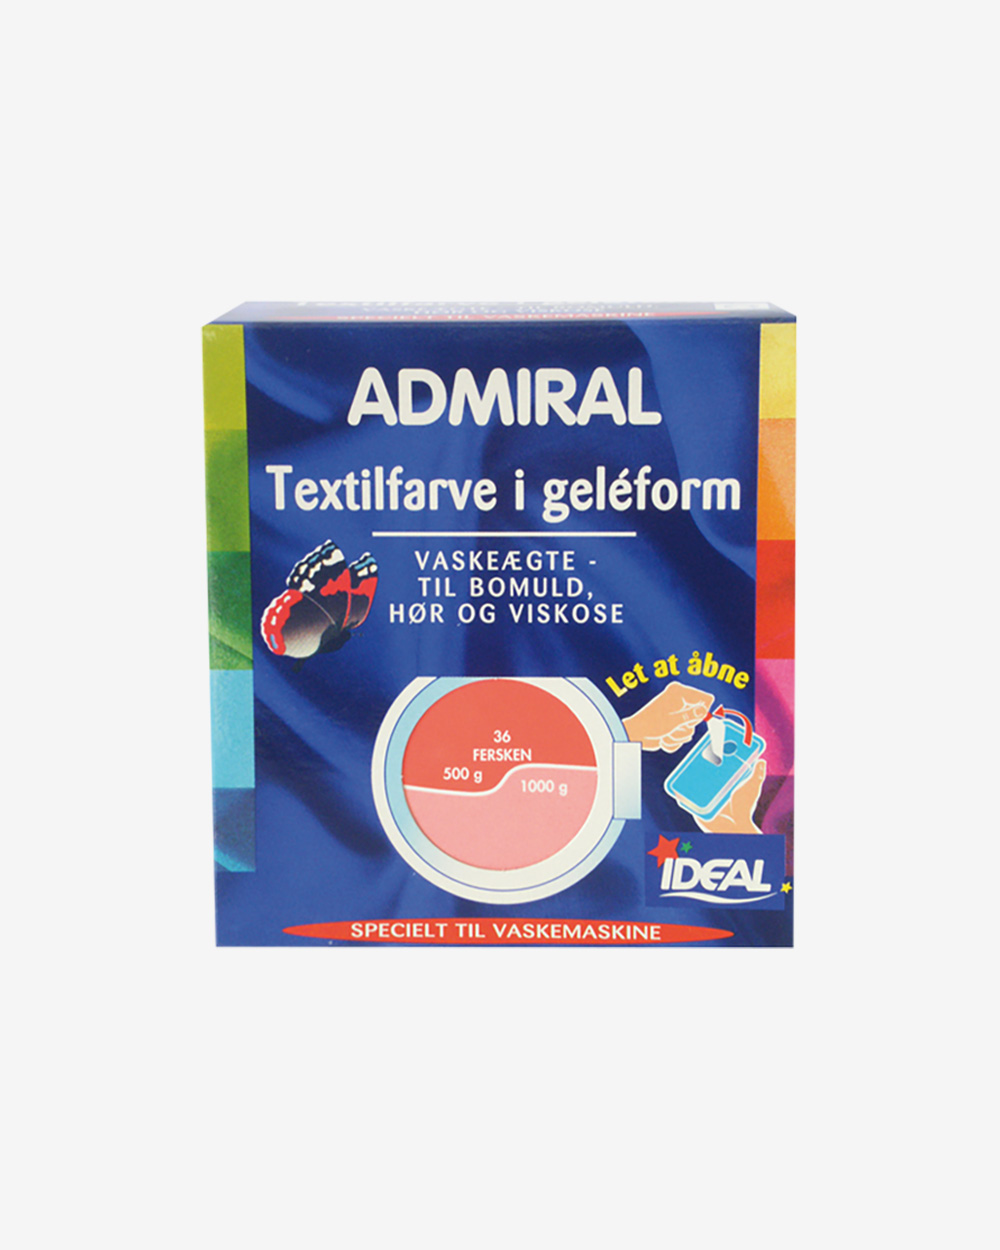 Admiral Textilfarve i geléform- Fersken (36)